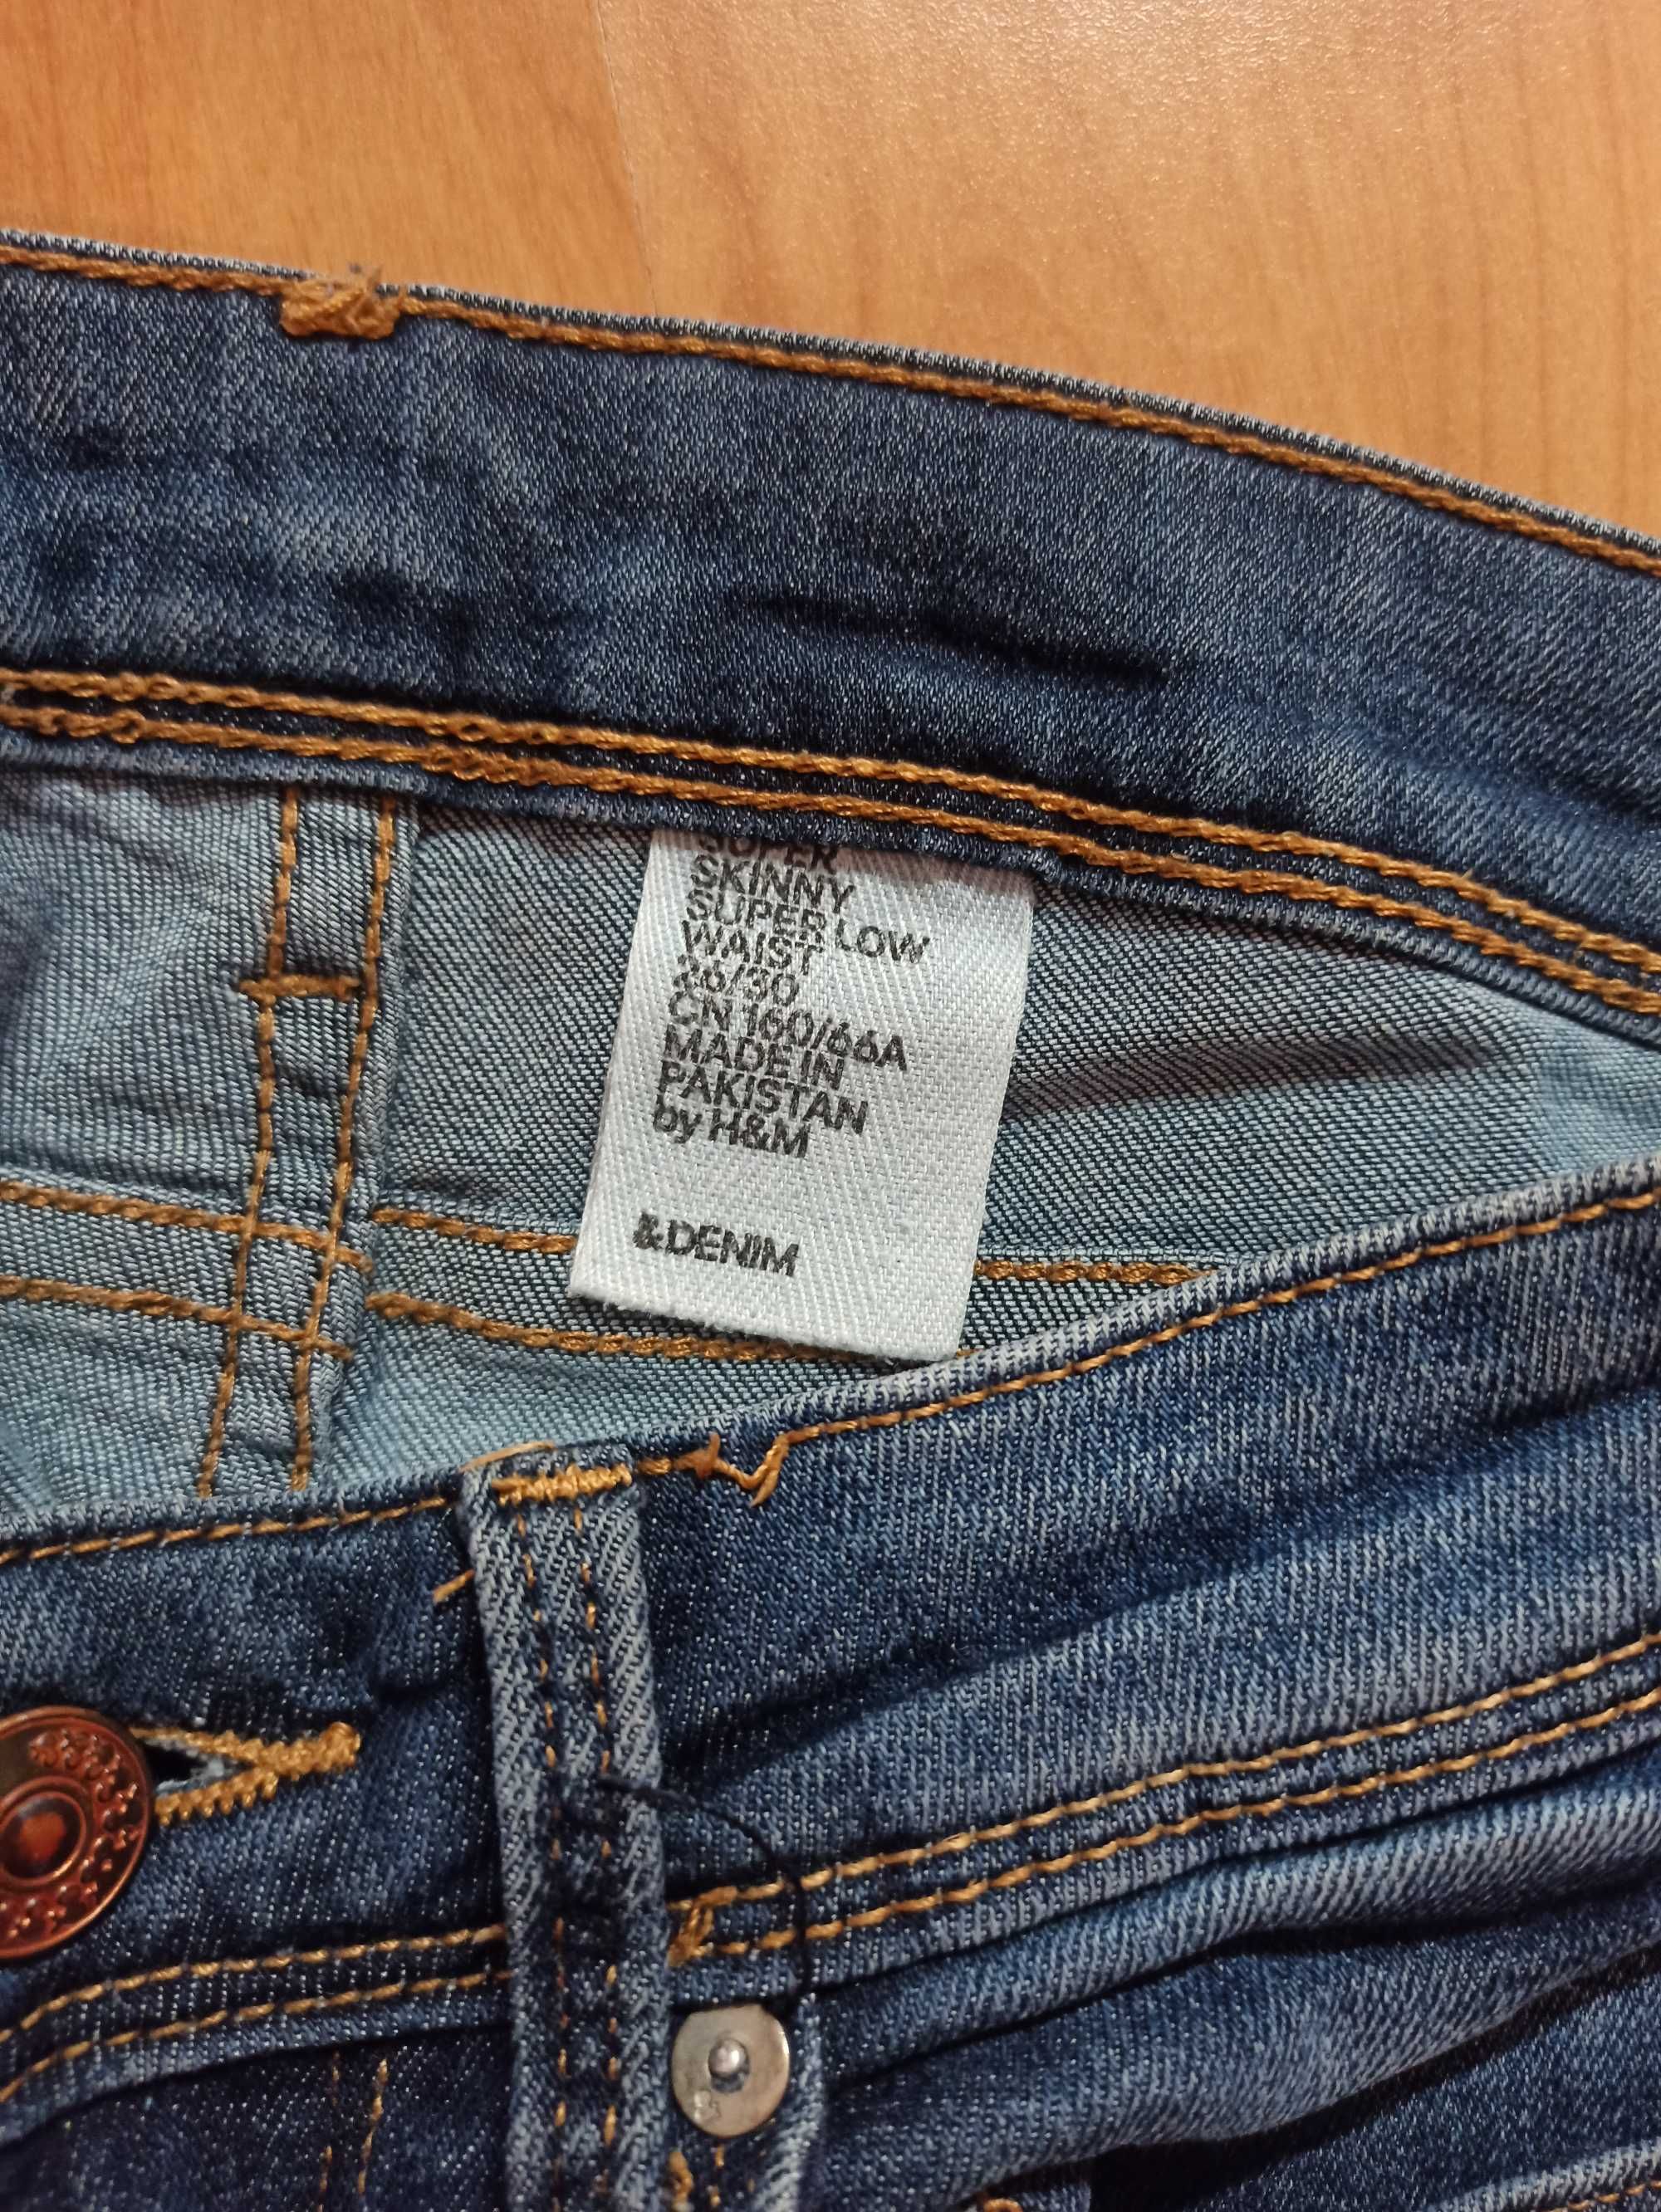 Spodnie/Jeansy rurki H&M, rozmiar 26/30, XS/S